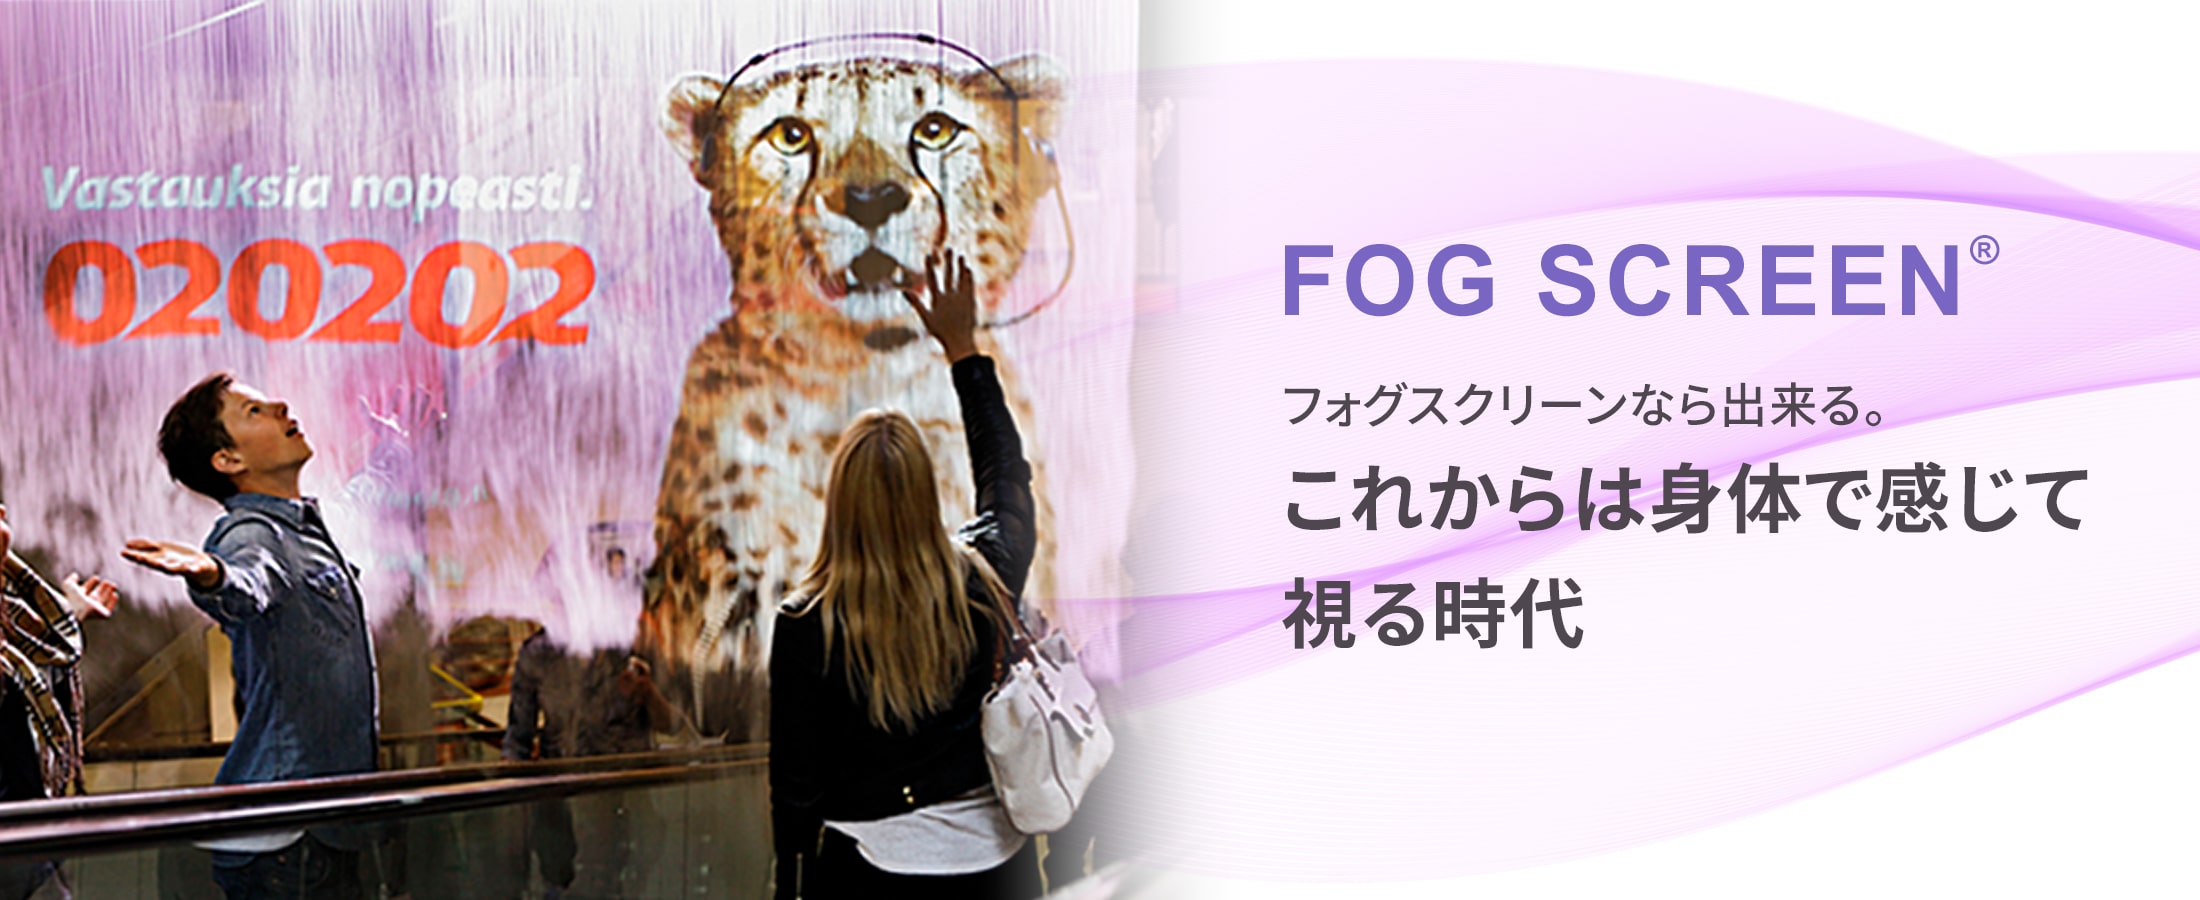 Fog Screen